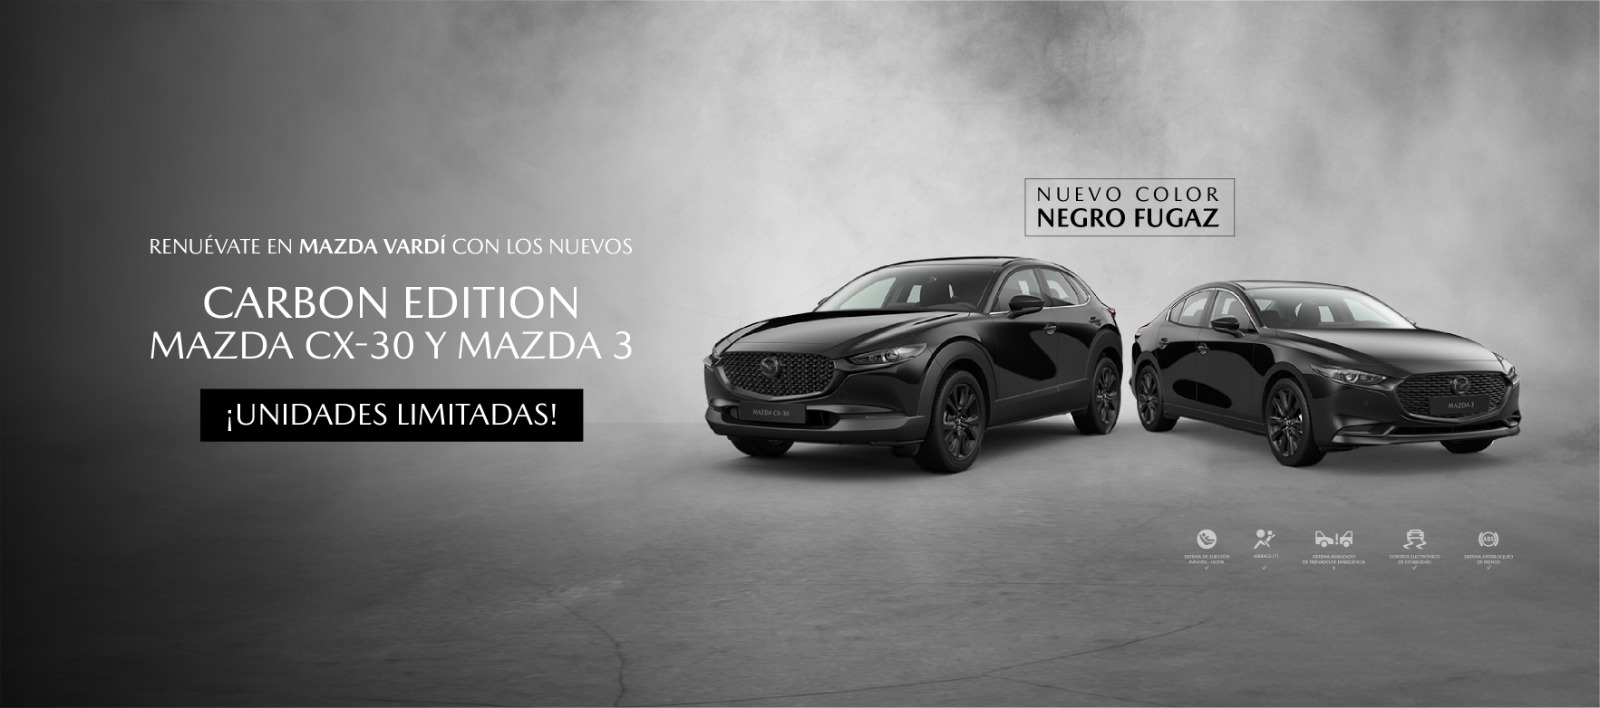 Carbon edition Mazda Cx-30 y Mazda 3